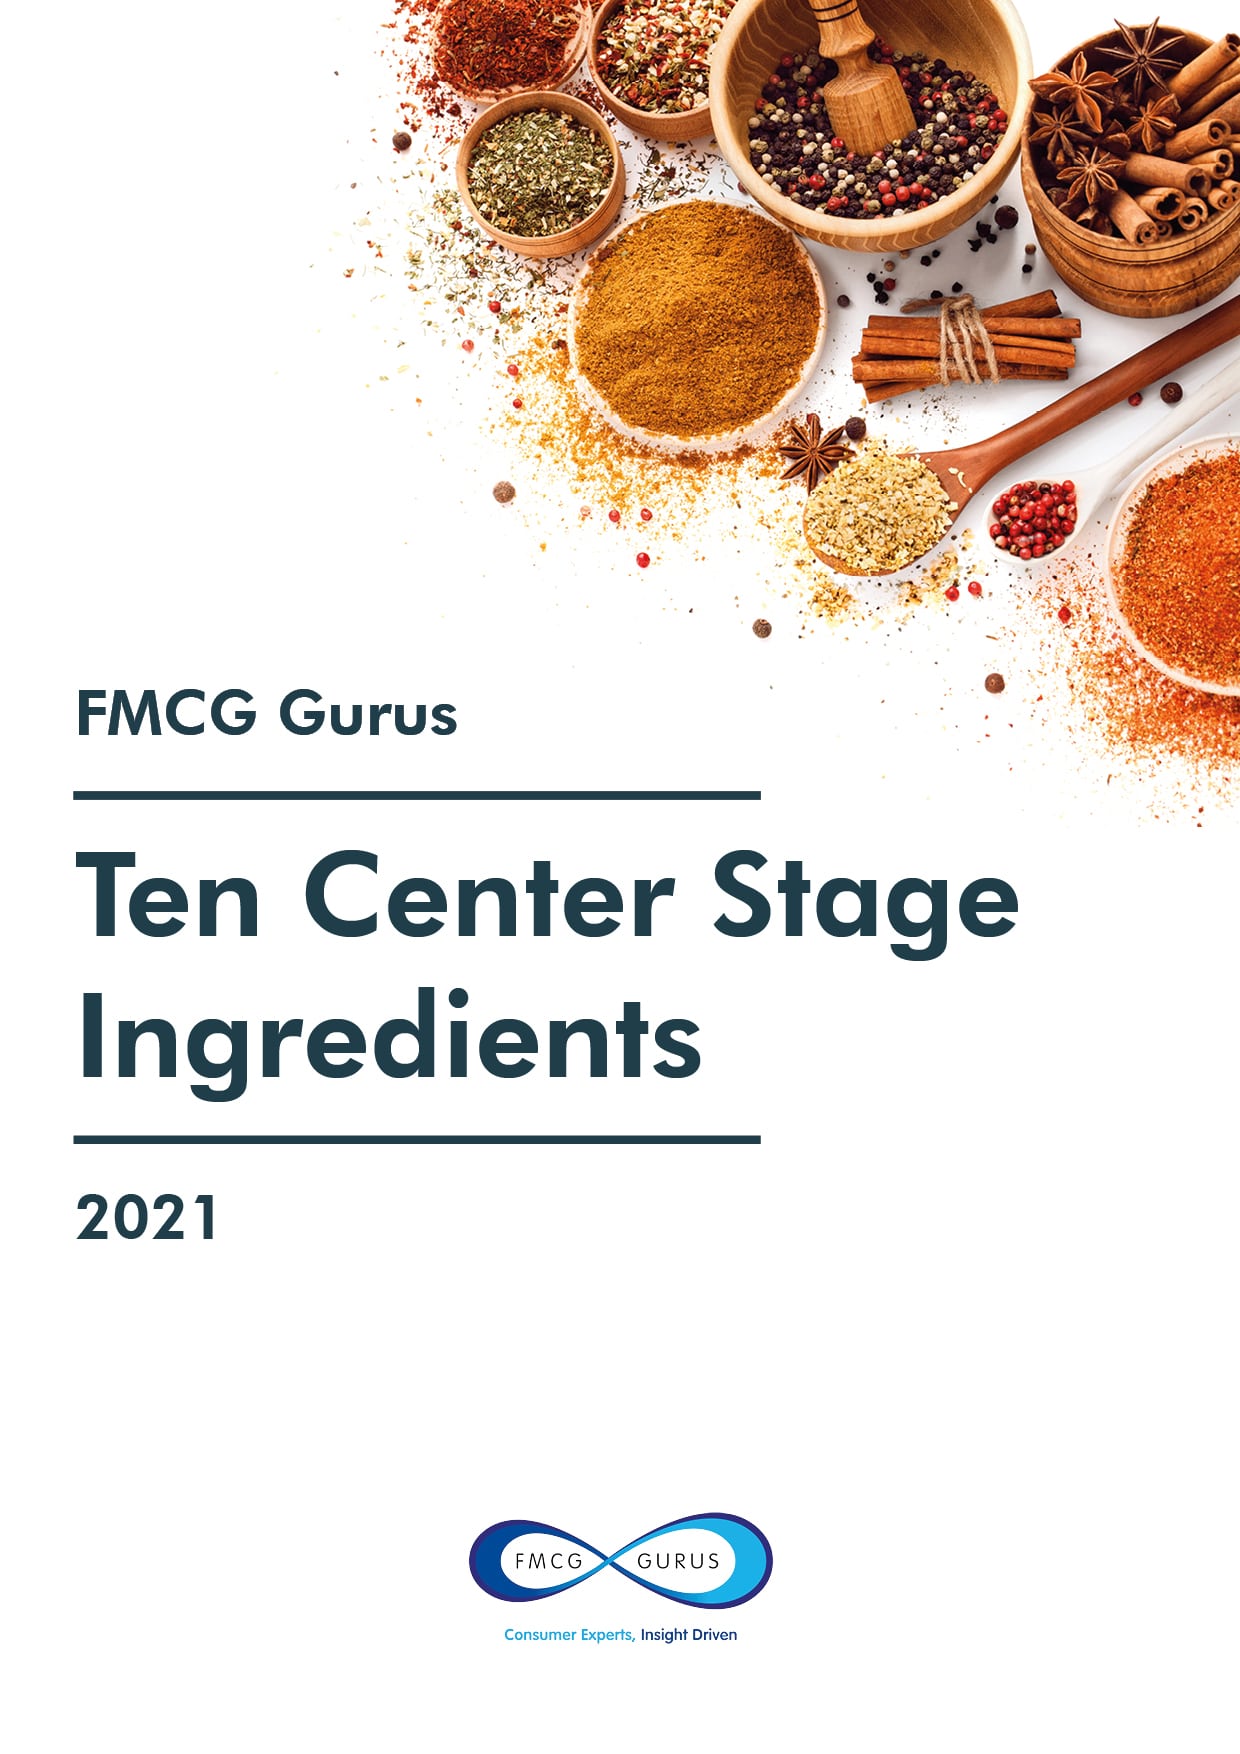 FMCG Gurus - Ten Center Stage Ingredients in 2021 - Front-min.jpg